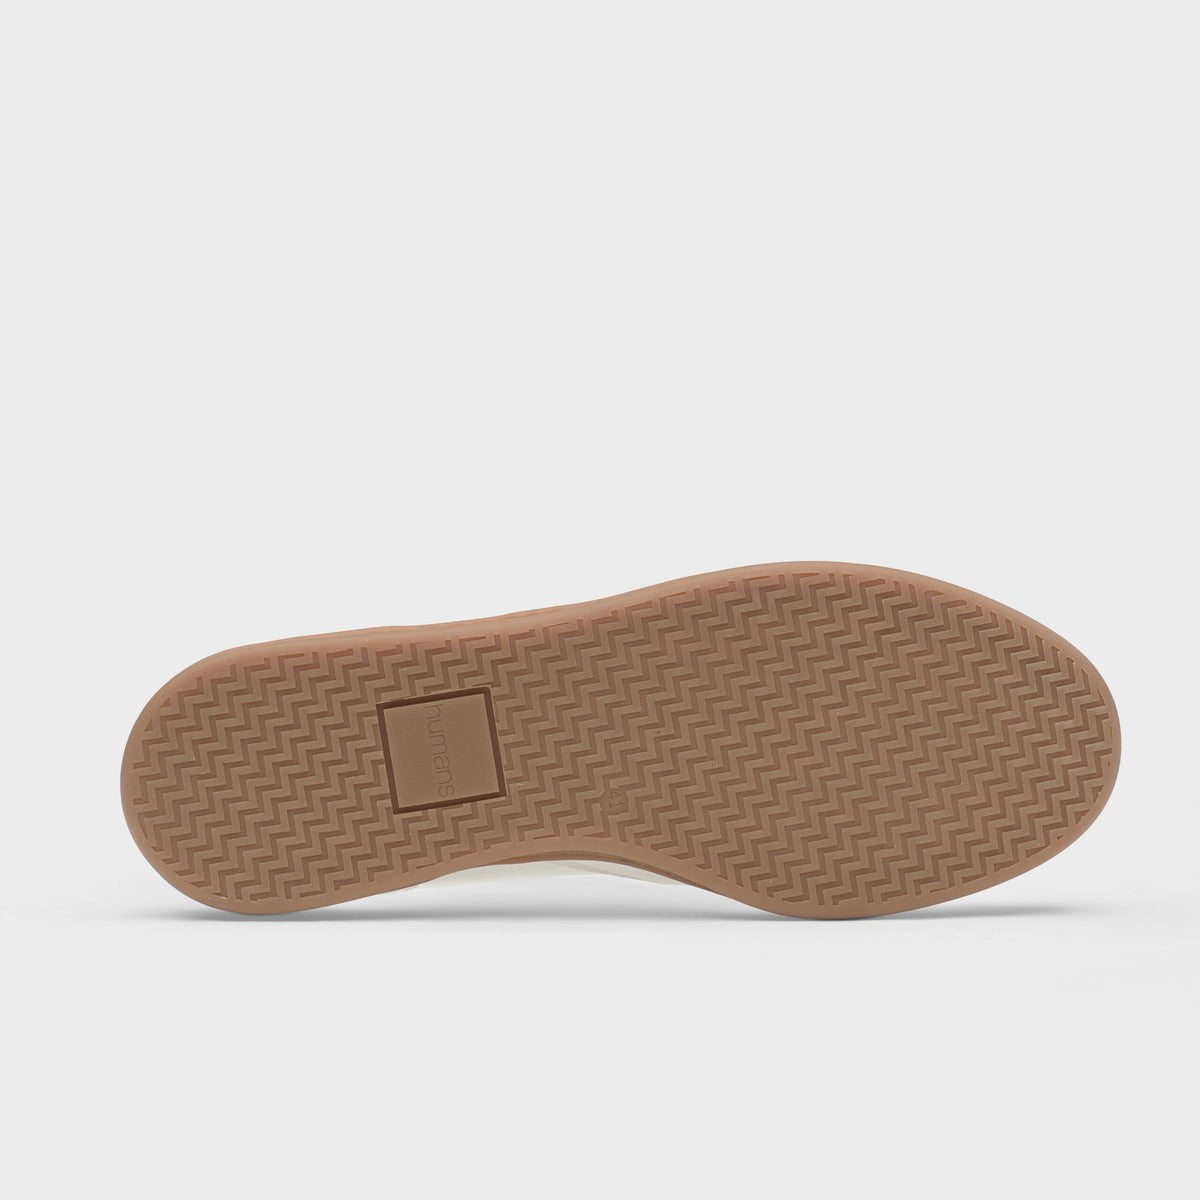 Eden V3 Sustainable Sneaker – White/Black/Gum